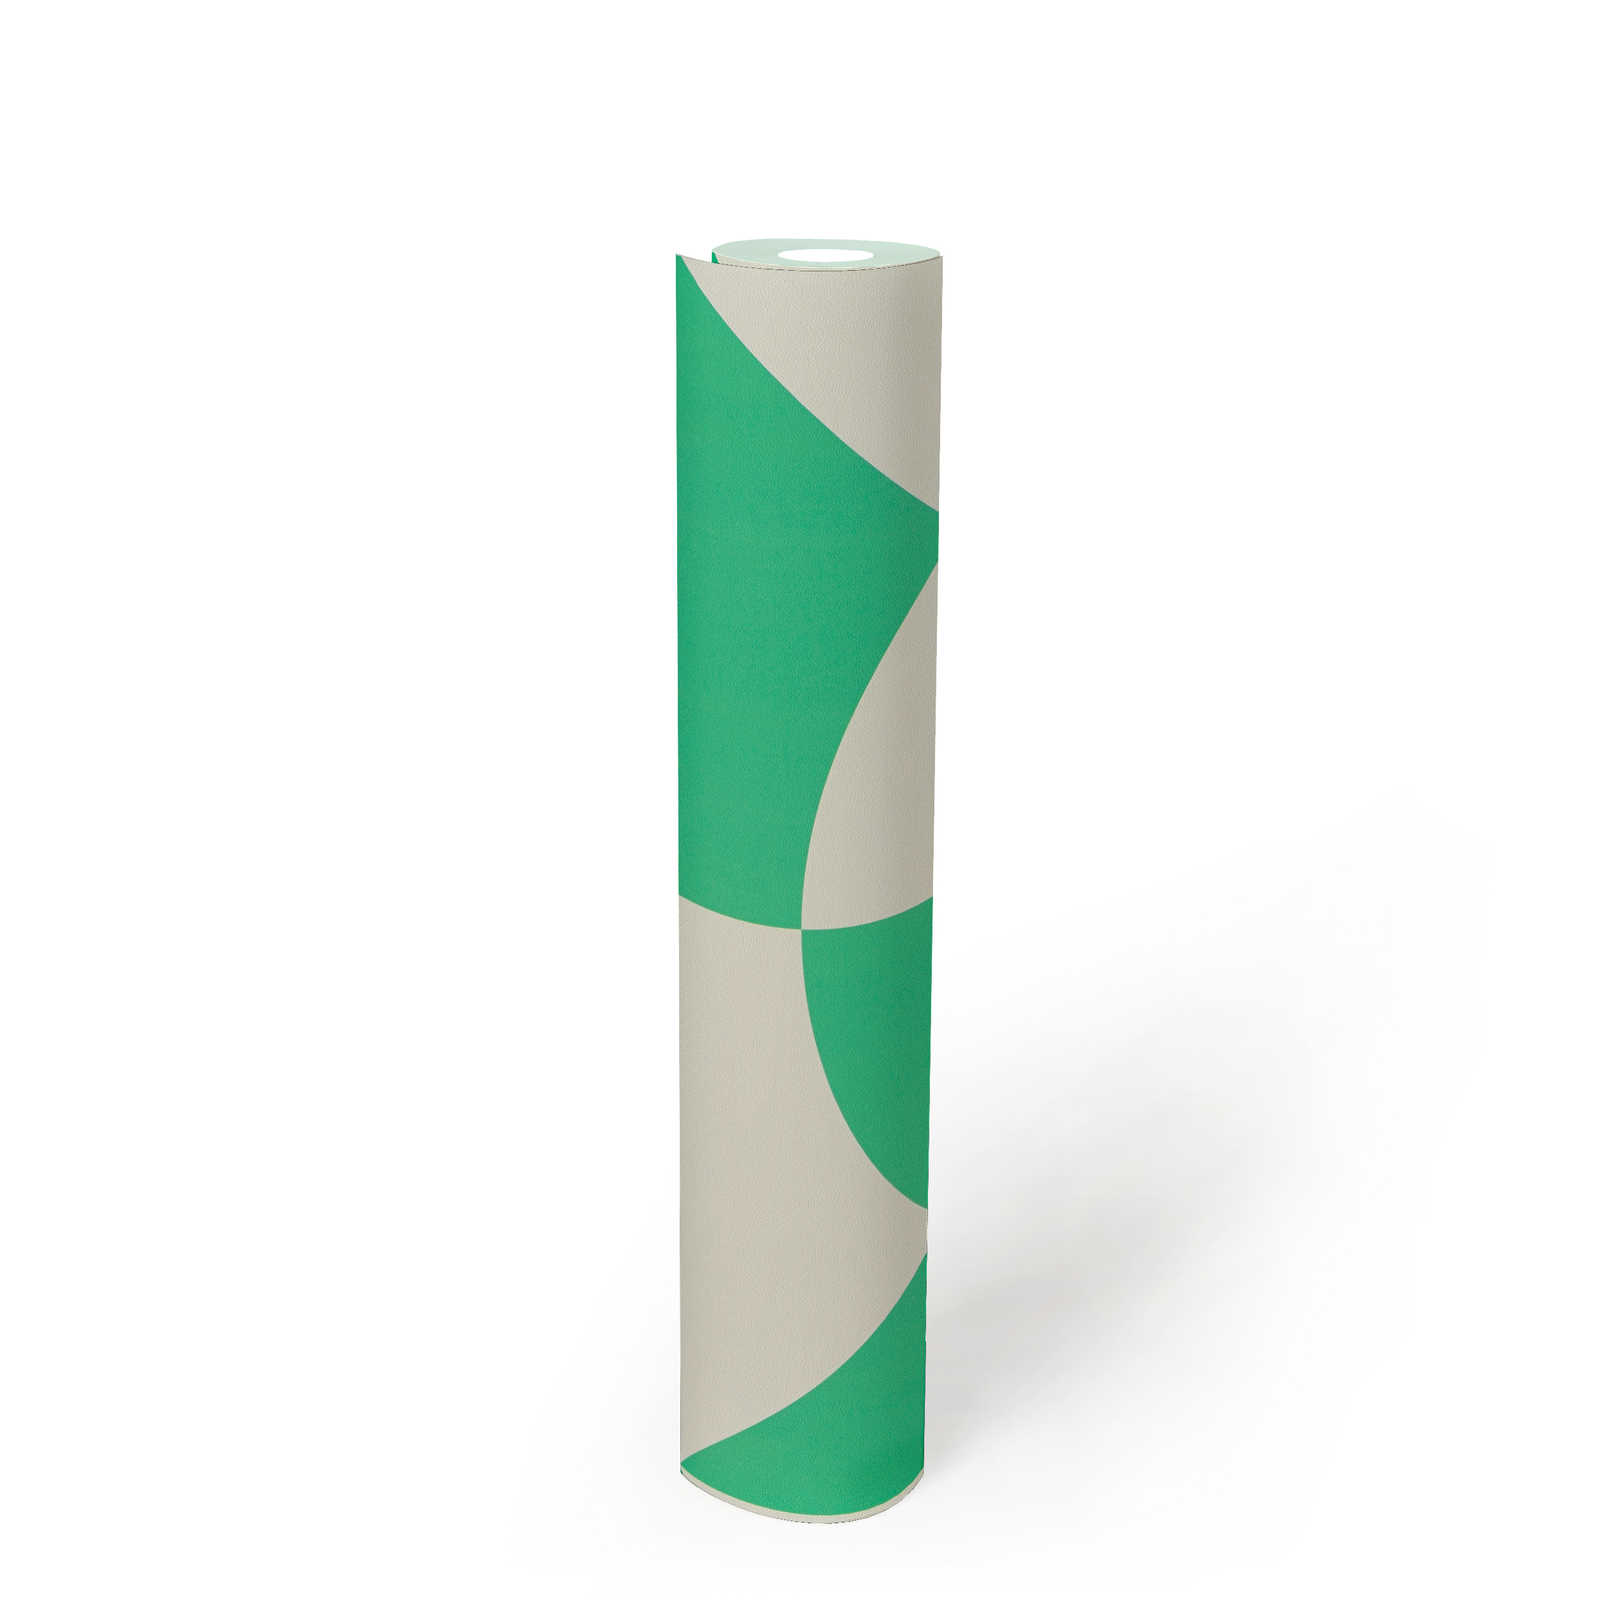             Papier peint intissé avec formes géométriques - vert, blanc
        